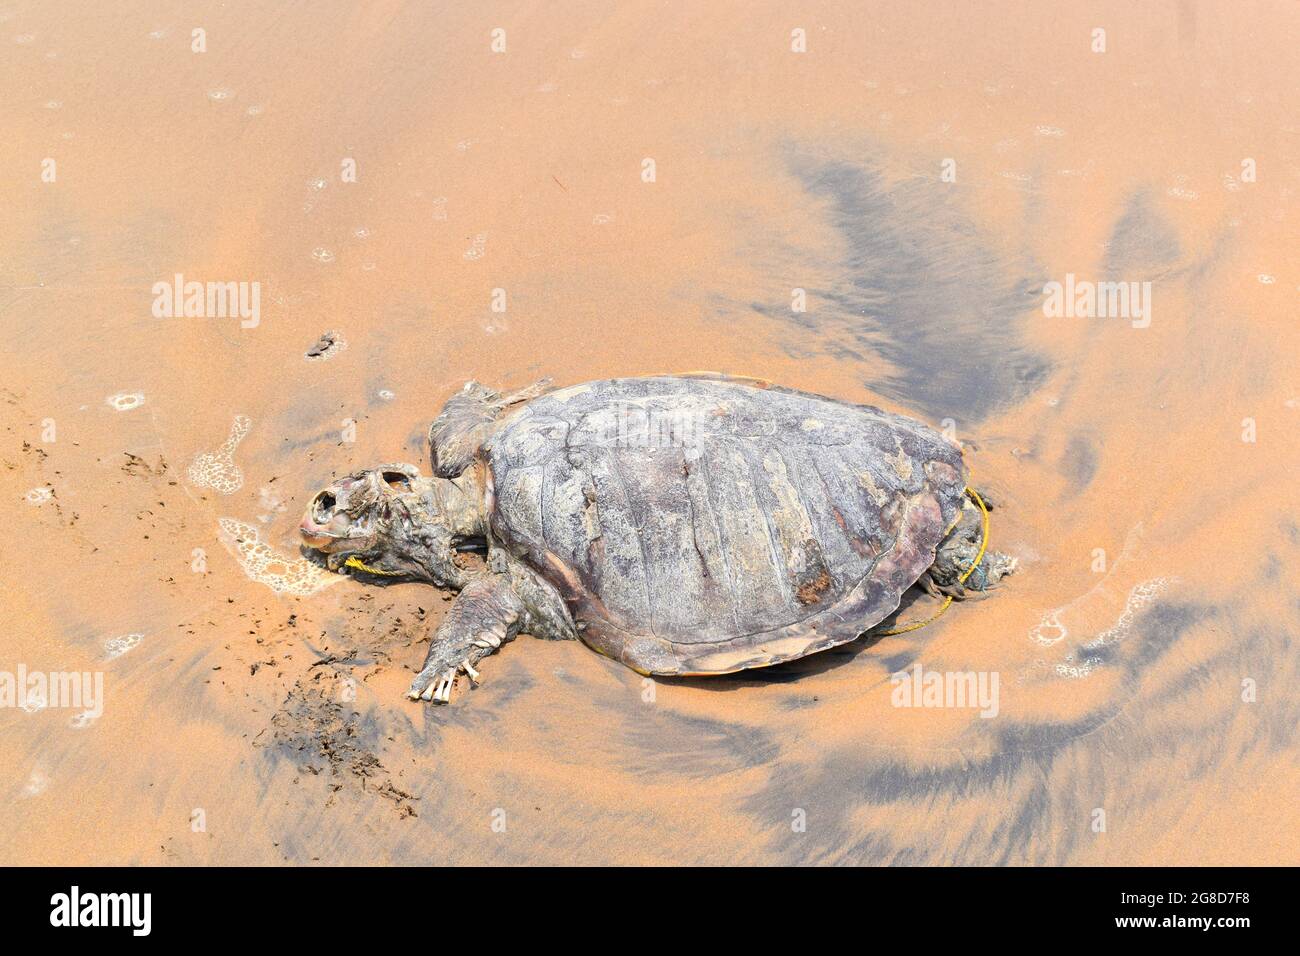 ORTOISE starb im INDISCHEN OZEAN. Traurig zu teilen, in der Indischen Ozean Schildkröte (Schildkröte), schwamm an Land und starb an der Küste. Stockfoto